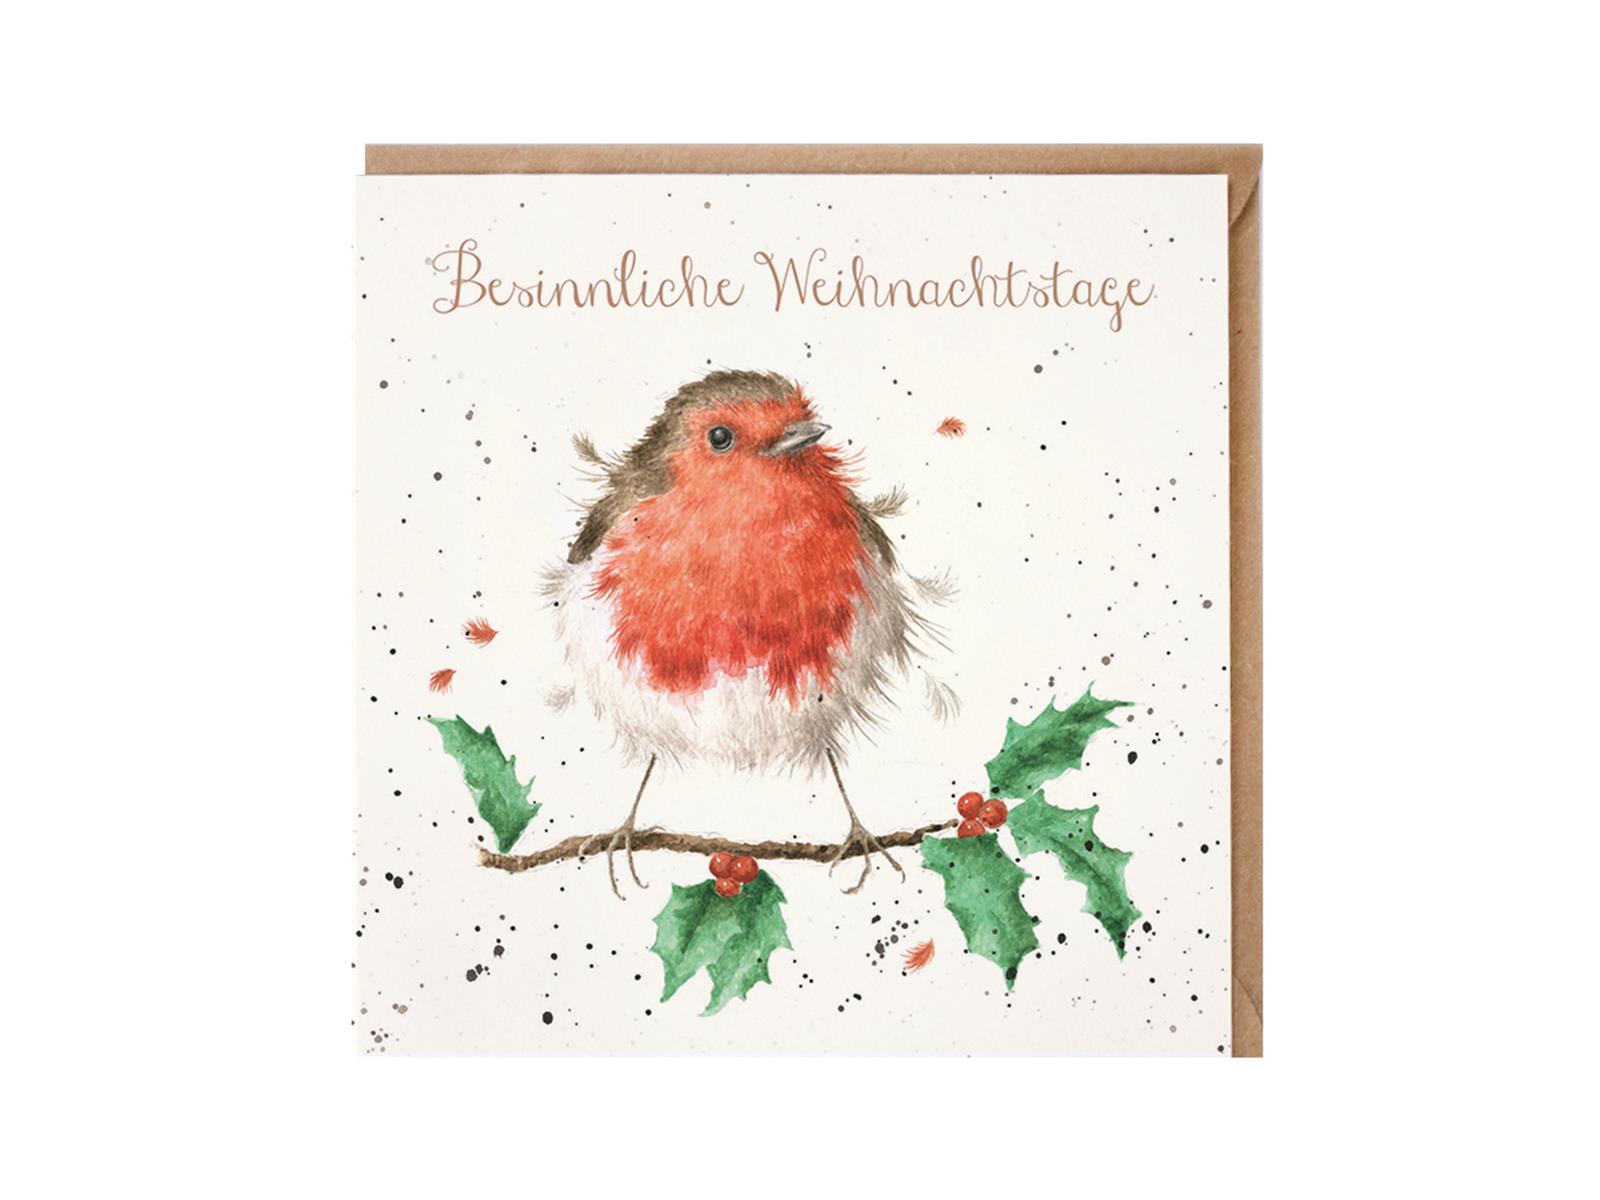 Wrendale Doppelkarte Weihnachten mit Umschlag, Besinnliche Weihnachtstage, Motiv Rotkehlchen auf  Mistelzweig, 15x15 cm